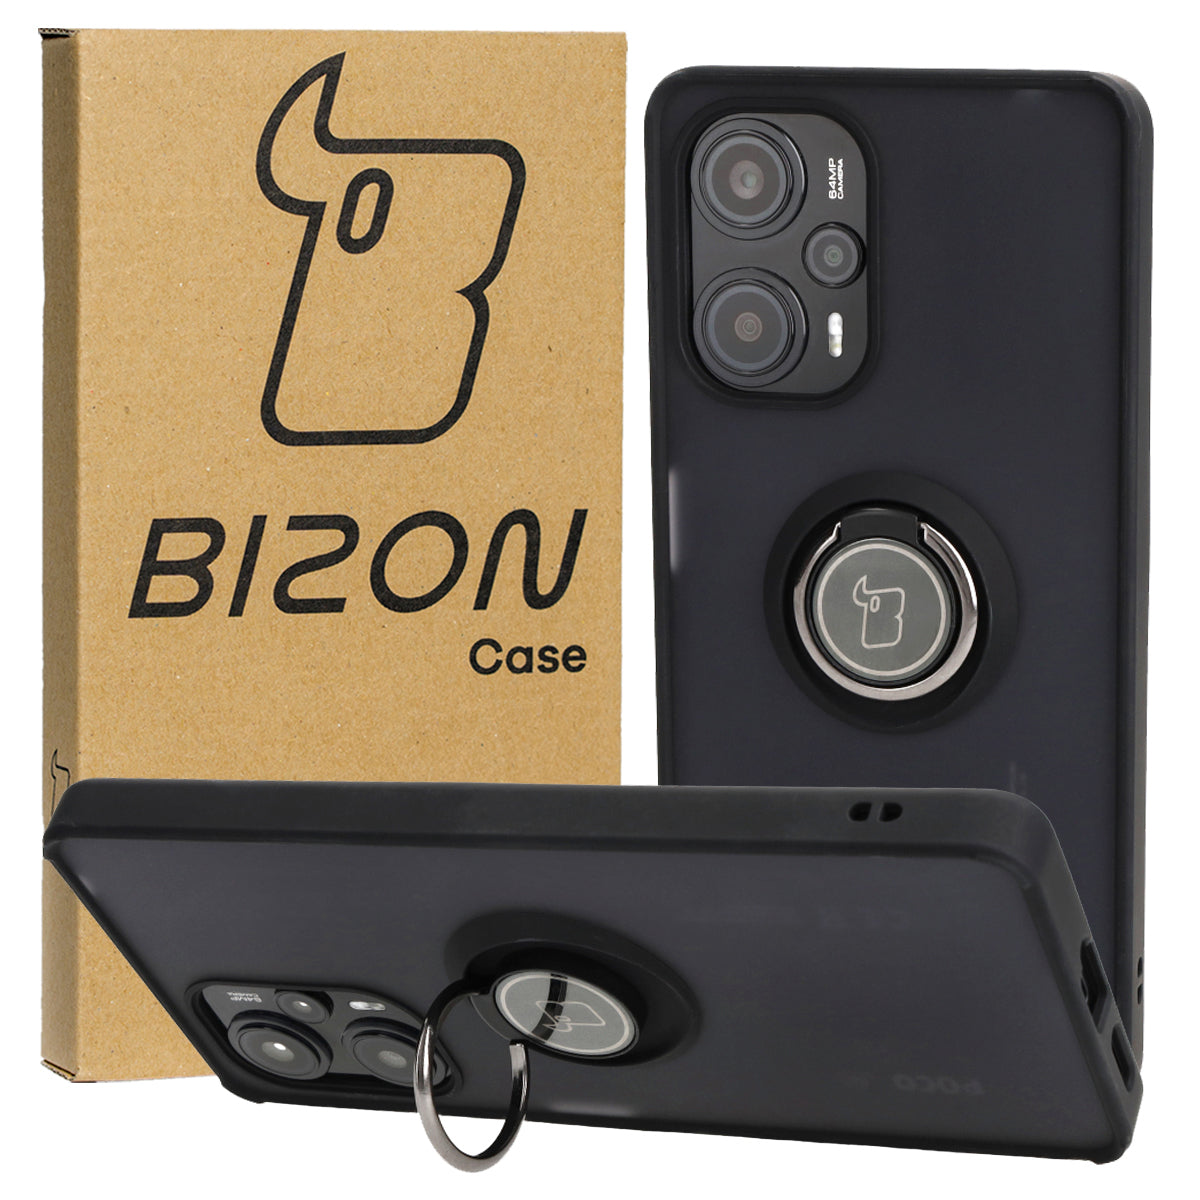 Handyhülle mit Fingergriff für Xiaomi Pocophone F5, Bizon Case Hybrid Ring, getönt mit schwarzem Rahmen